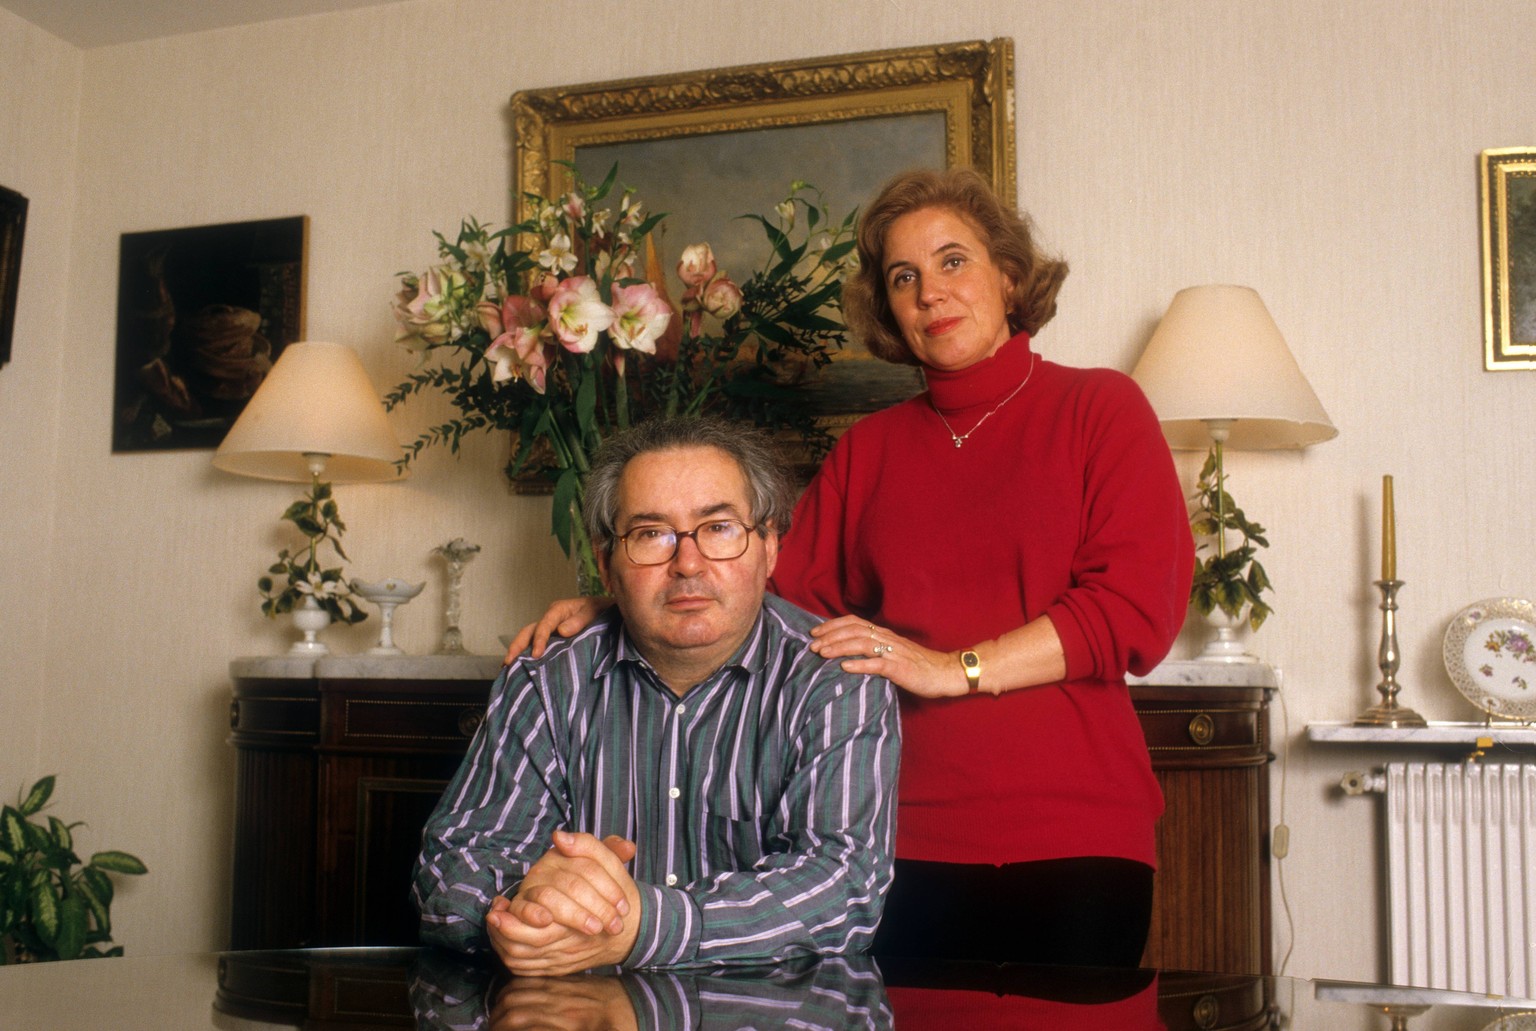 Journalistin Beate Klarsfeld mit Ehemann Serge Klarsfeld (Historiker) in ihrer Wohnung in Paris; Aufnahmedatum geschätzt